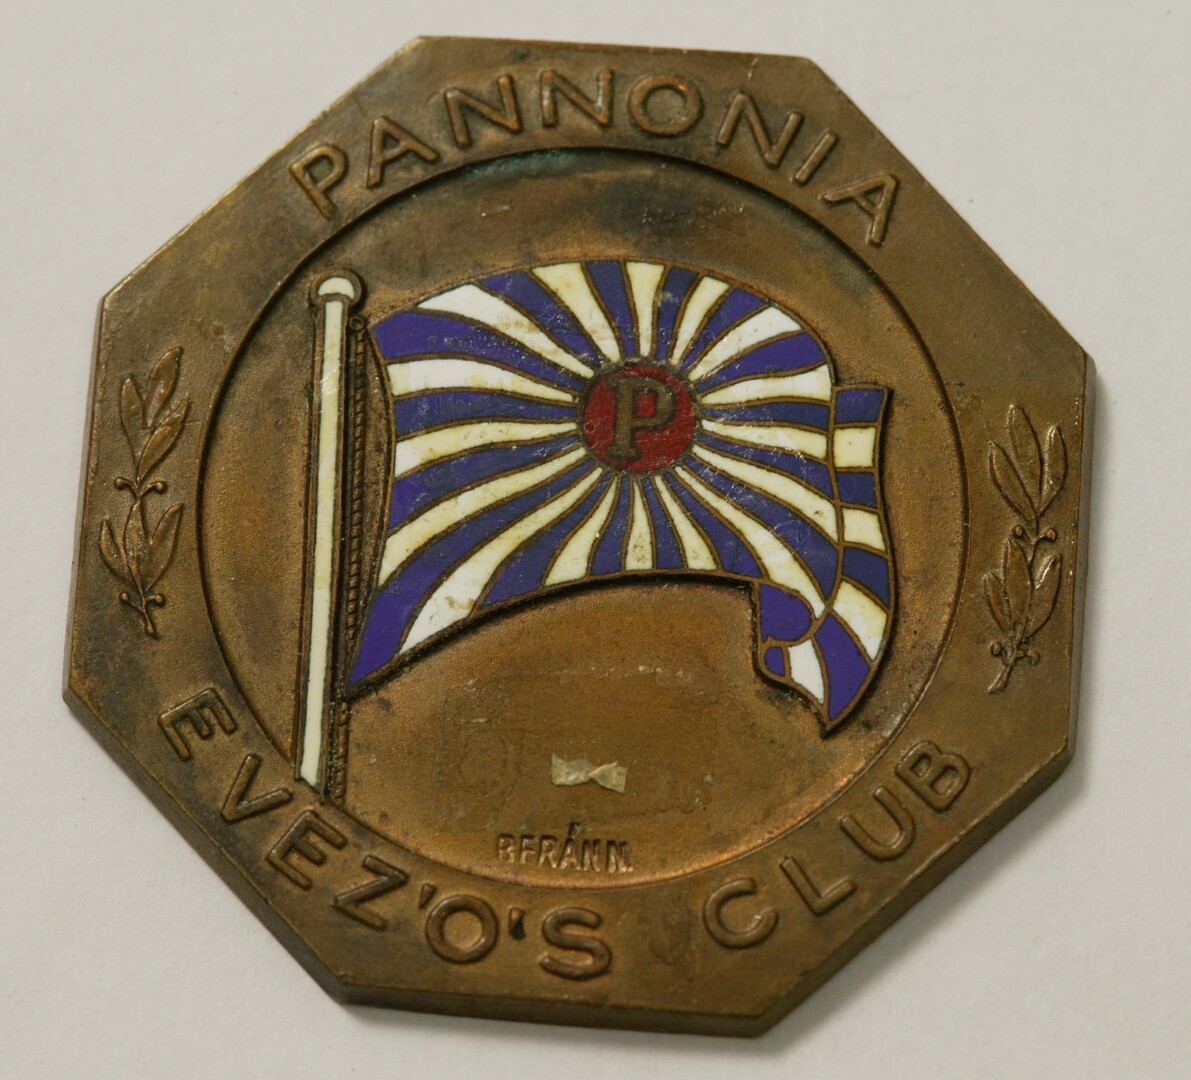 Pannonia Evezős Club vízisport érem (Magyar Környezetvédelmi és Vízügyi Múzeum - Duna Múzeum CC BY-NC-SA)